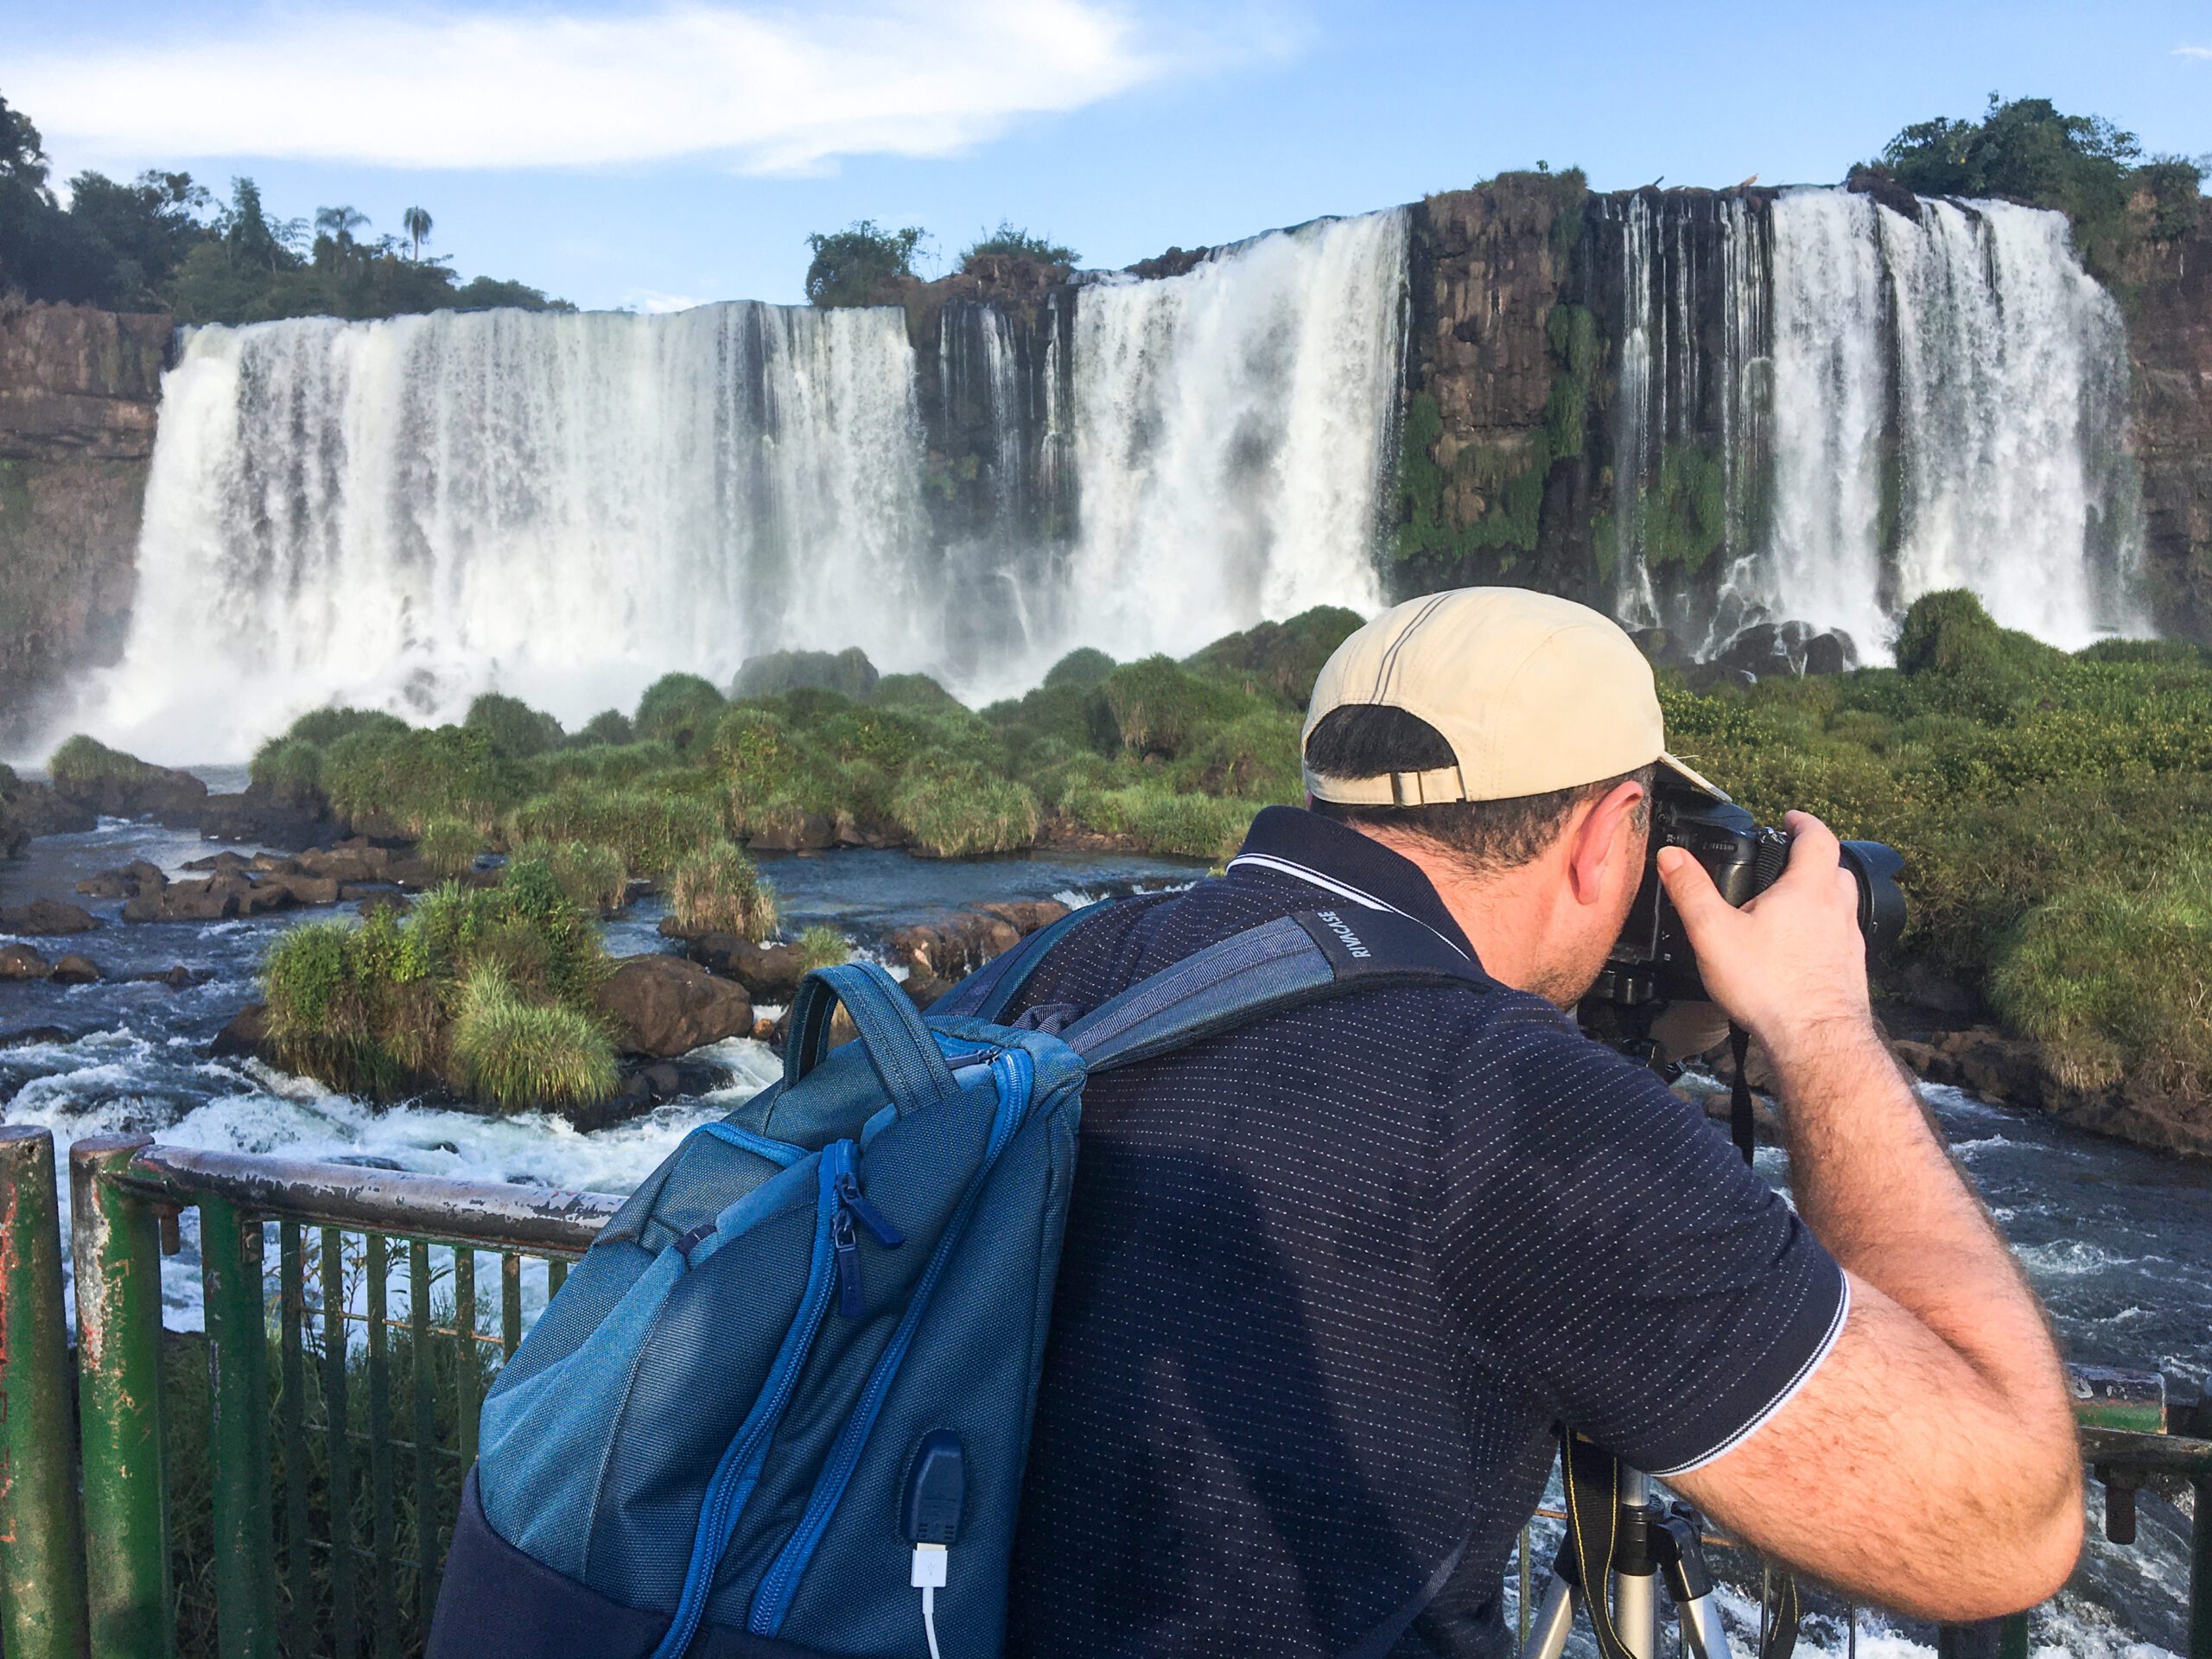 Anton Farrugia taking photo of Iguazu falls